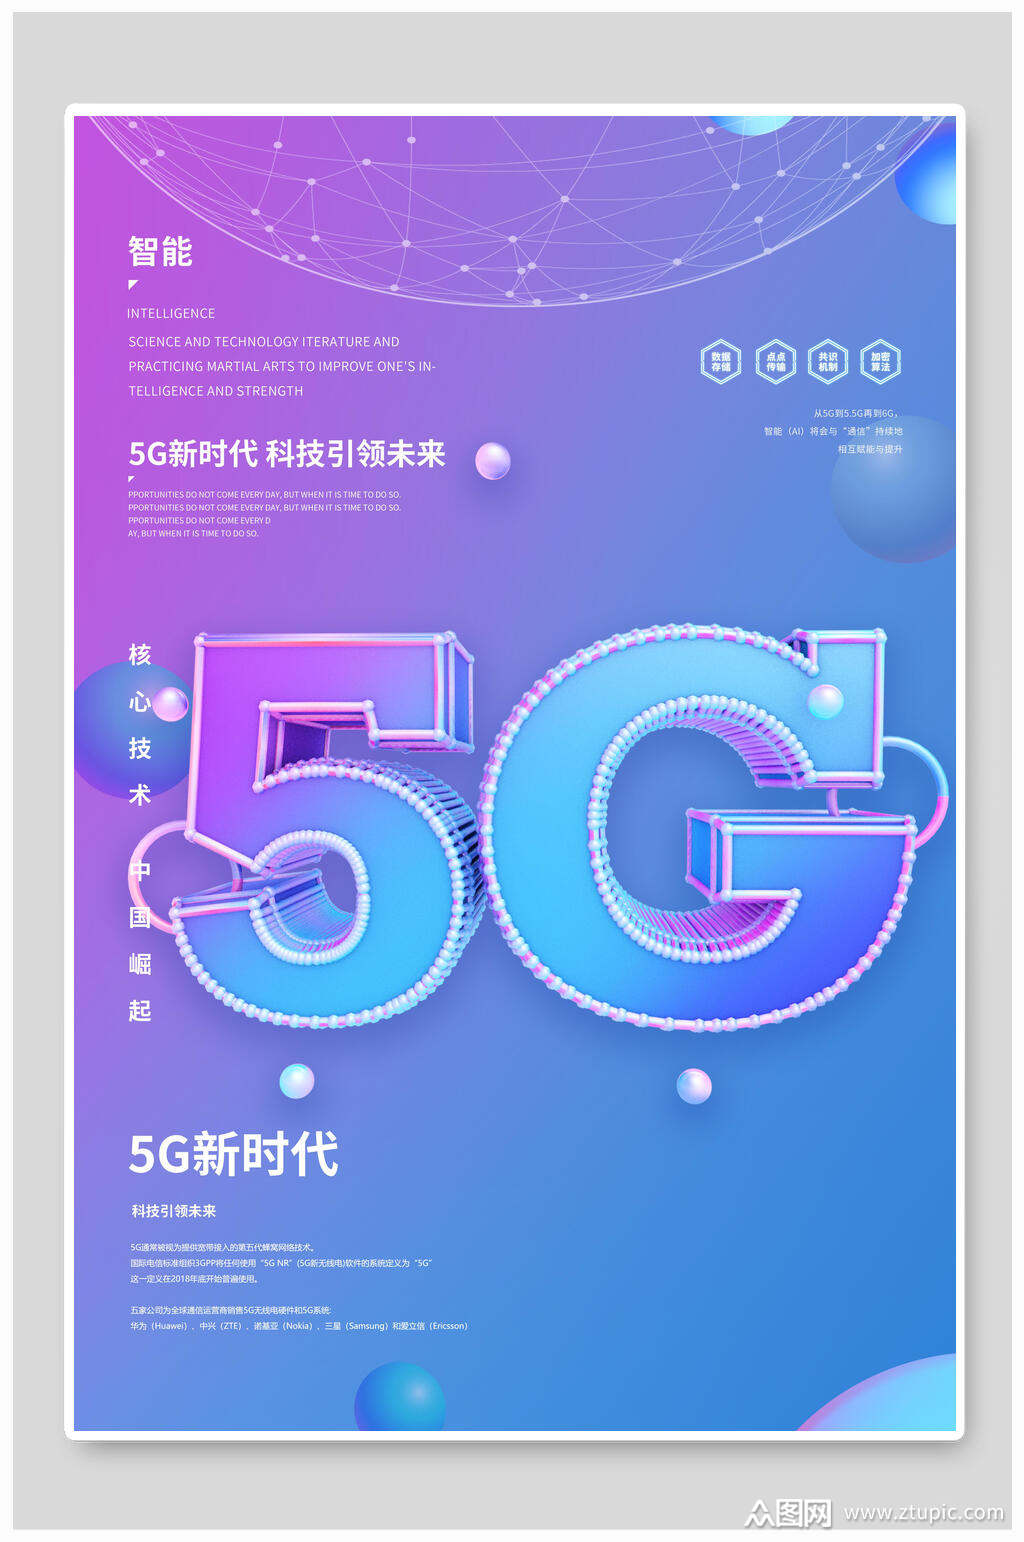 5G 科技引领手机产业变革，颠覆未来生活模式  第6张